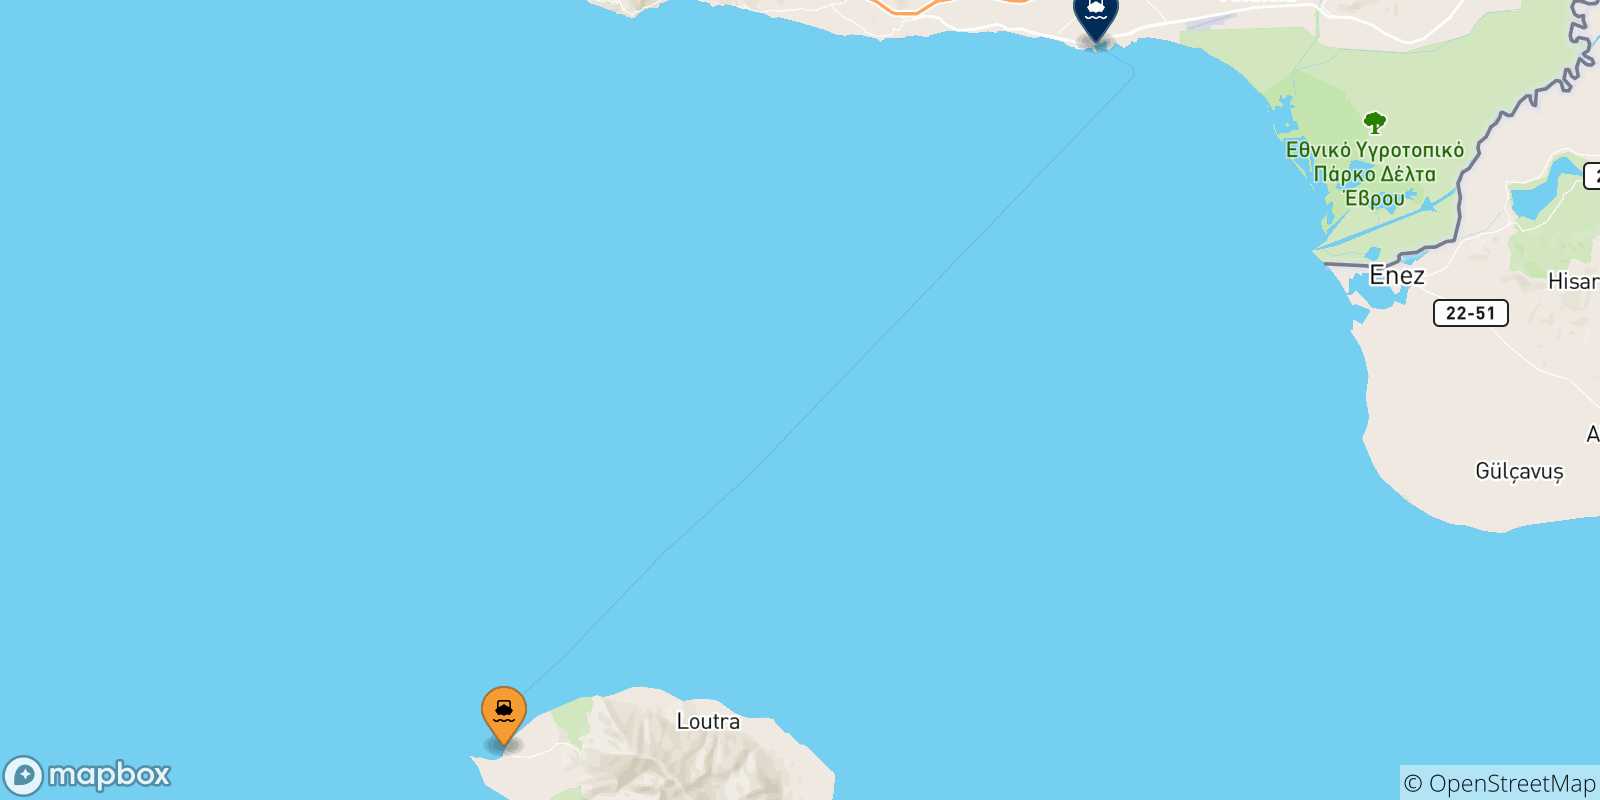 Mappa delle possibili rotte tra Samothraki e la Grecia